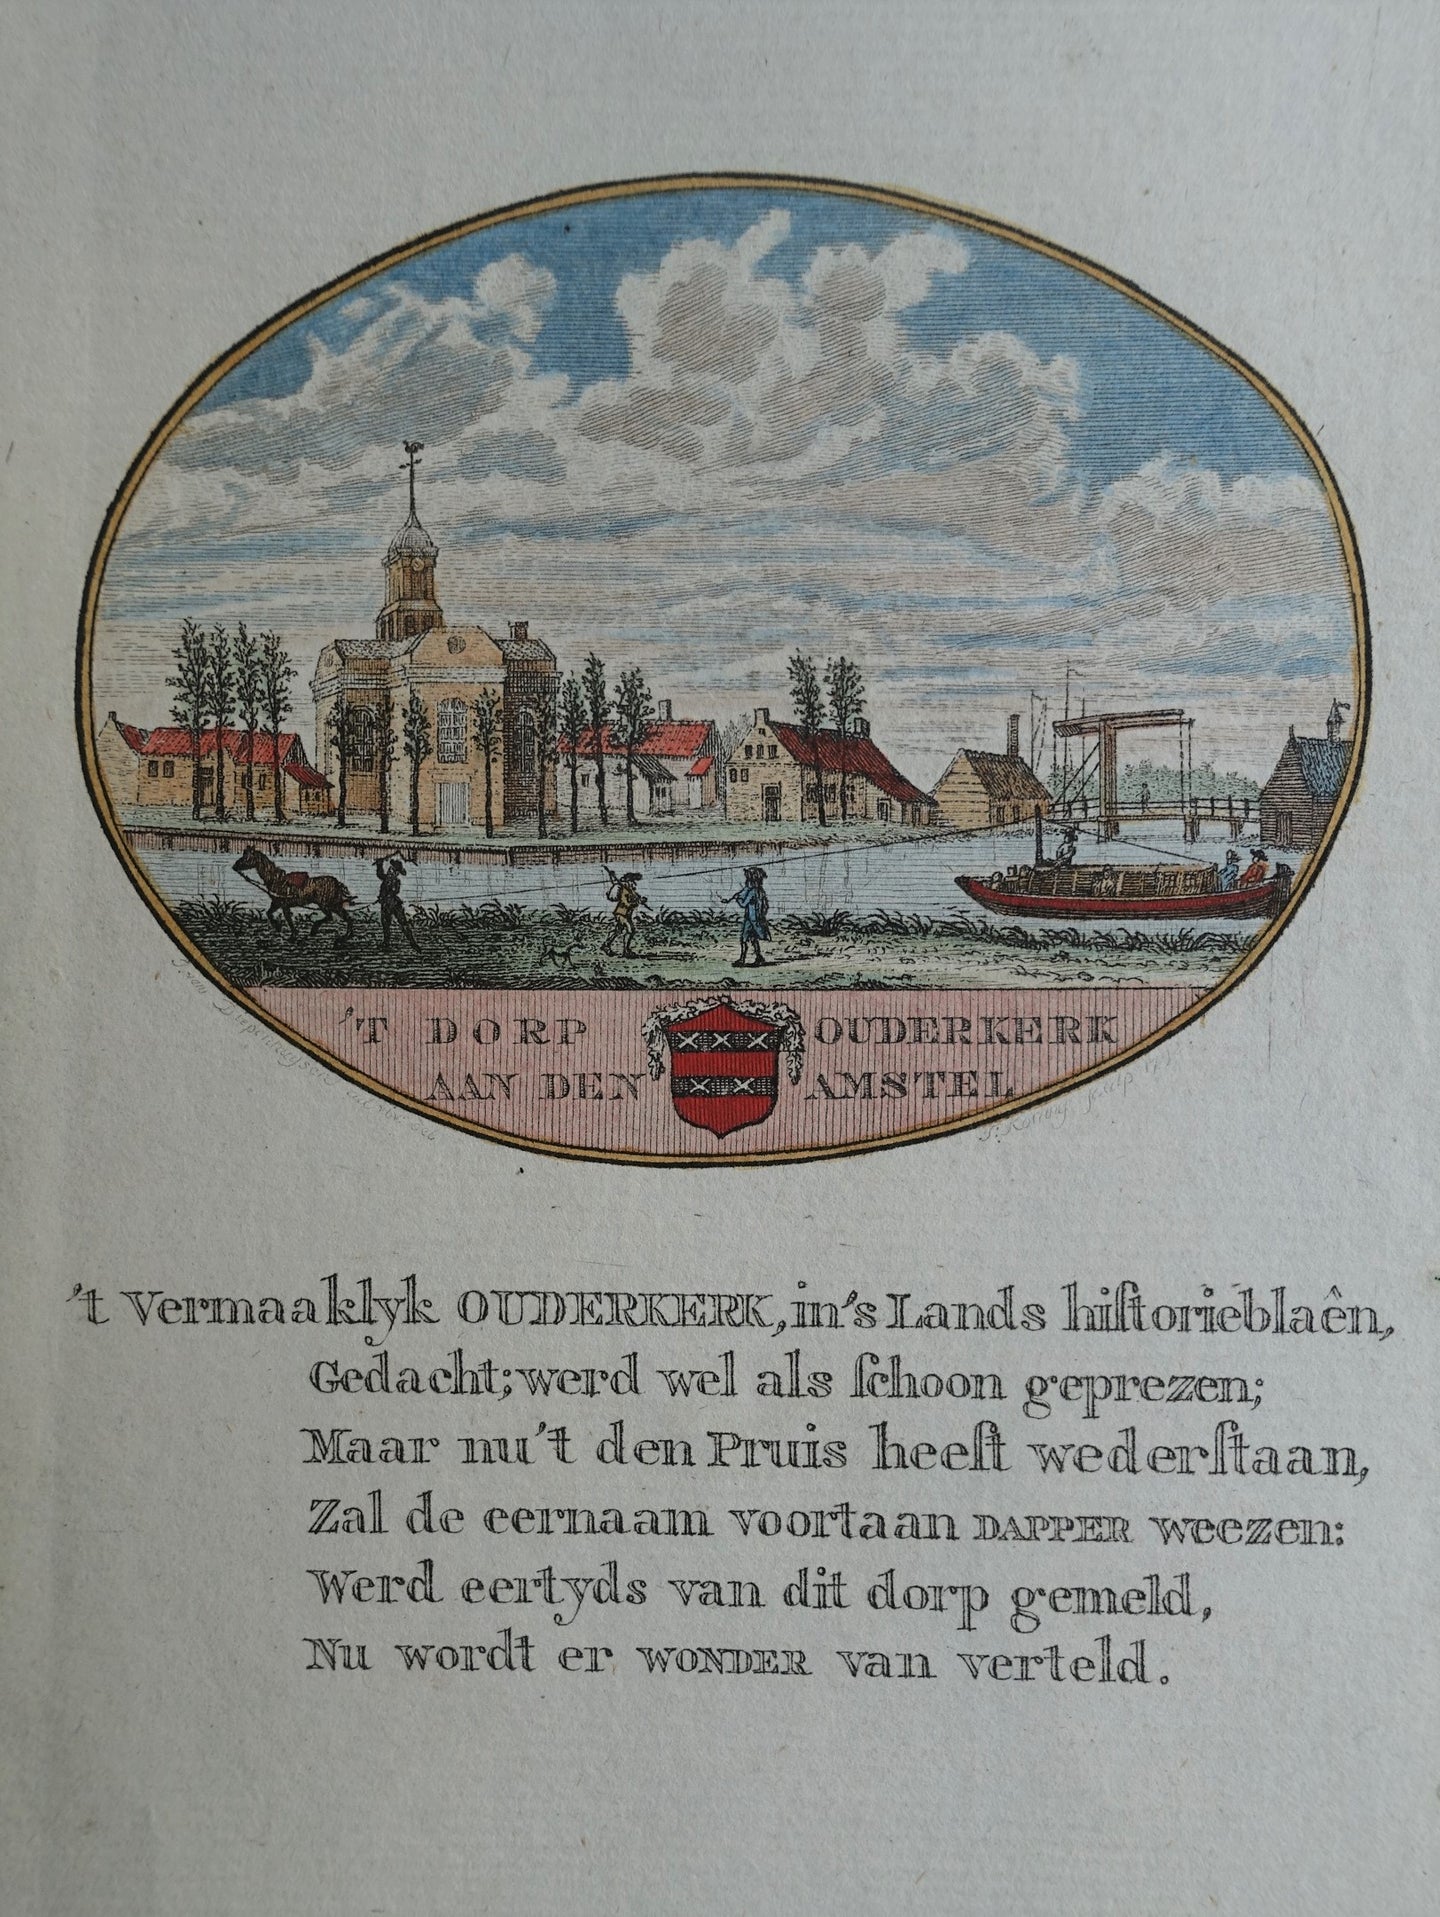 Ouderkerk aan de Amstel - Van Ollefen & Bakker - 1793